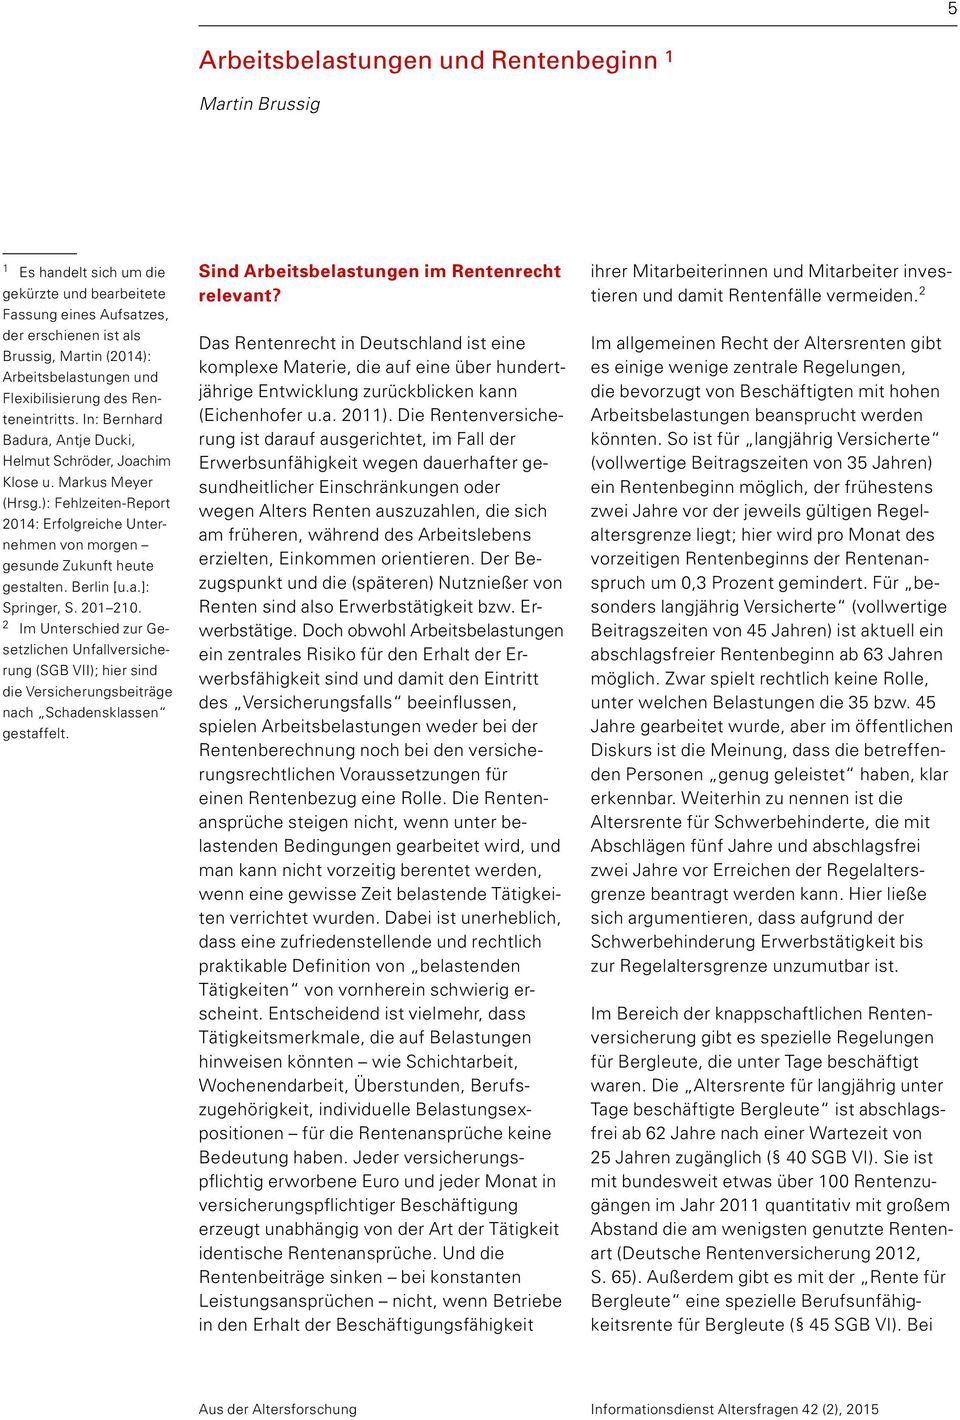 ): Fehlzeiten-Report 2014: Erfolgreiche Unternehmen von morgen gesunde Zukunft heute gestalten. Berlin [u.a.]: Springer, S. 201 210.